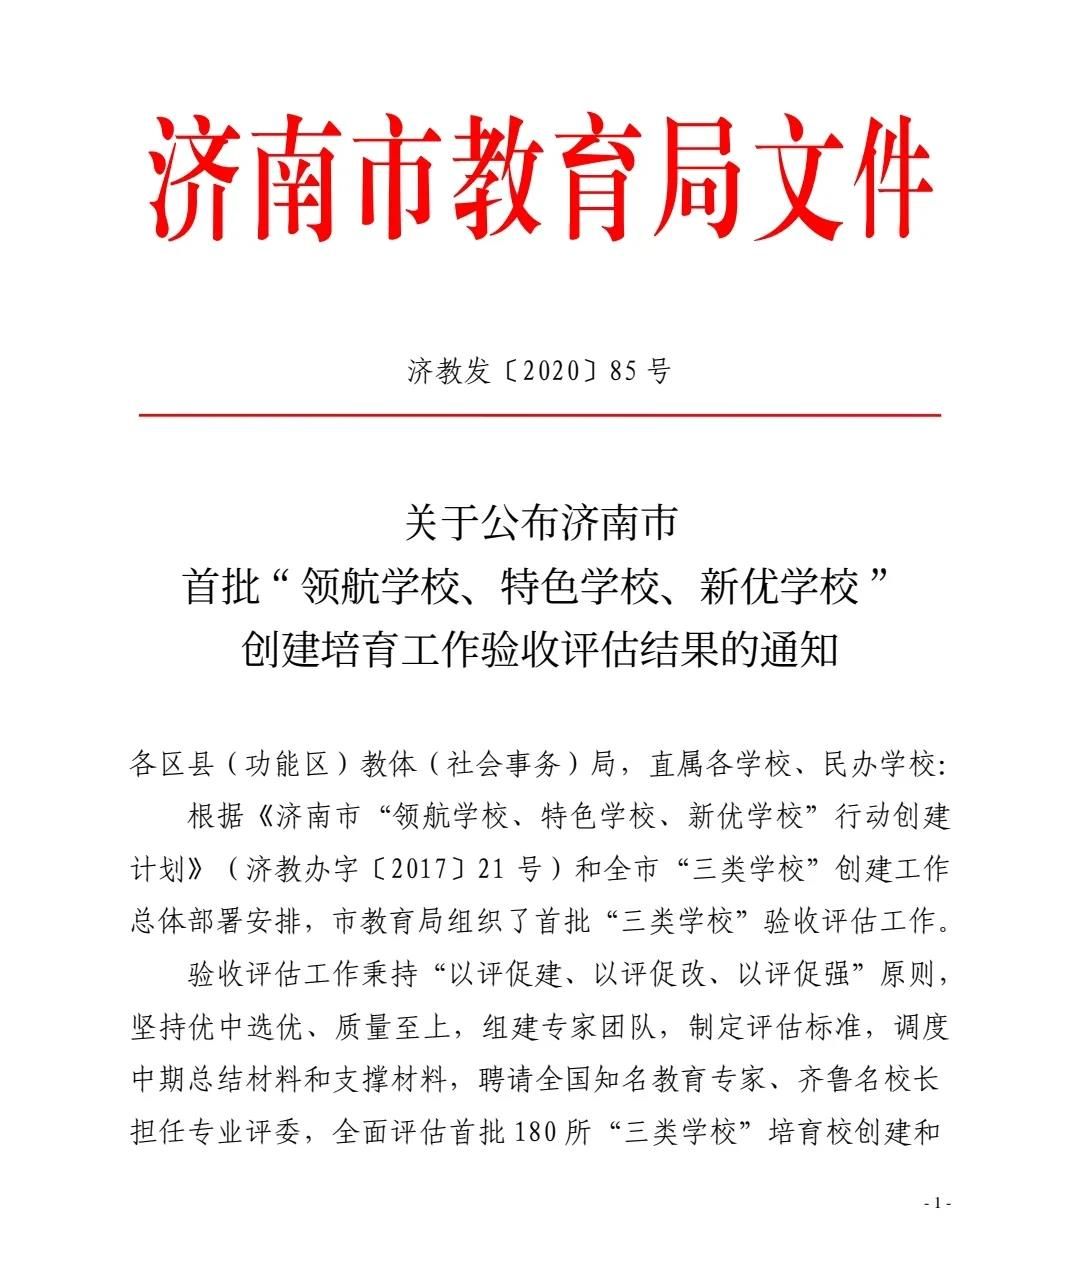 元旦迎喜报，山师齐鲁实验学校被评为济南市首批“新优学校” 和“百所家长学校示范校”